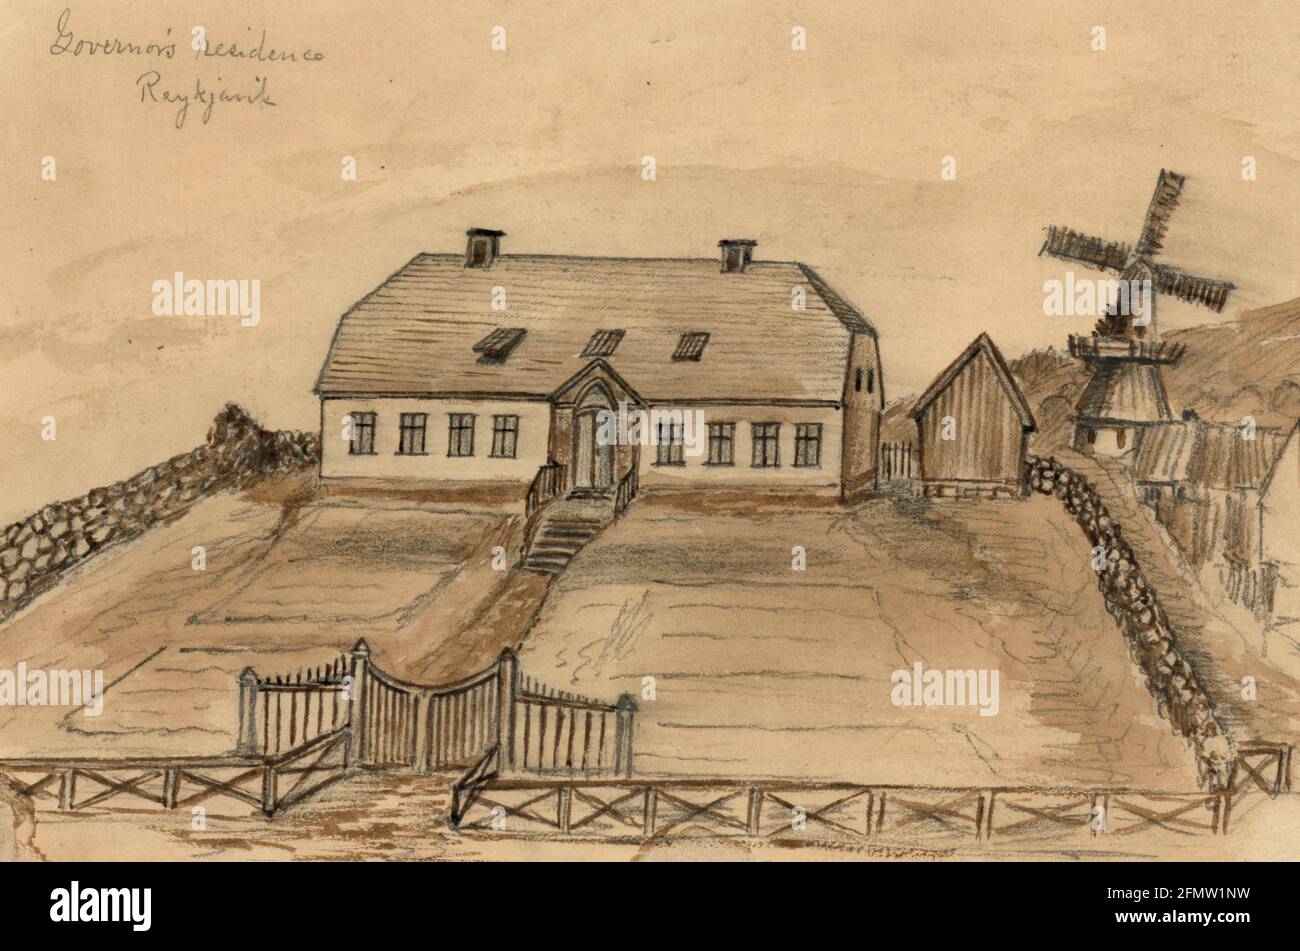 Residenz des Gouverneurs Reykjavik - die Zeichnung zeigt ein großes zweistöckiges Haus, das von einer Steinmauer umgeben ist, die Residenz des Gouverneurs von Island in der Hauptstadt Reykjavk. Bayard Taylor besuchte Island im Jahr 1862, vielleicht auf dem Weg nach Russland Stockfoto